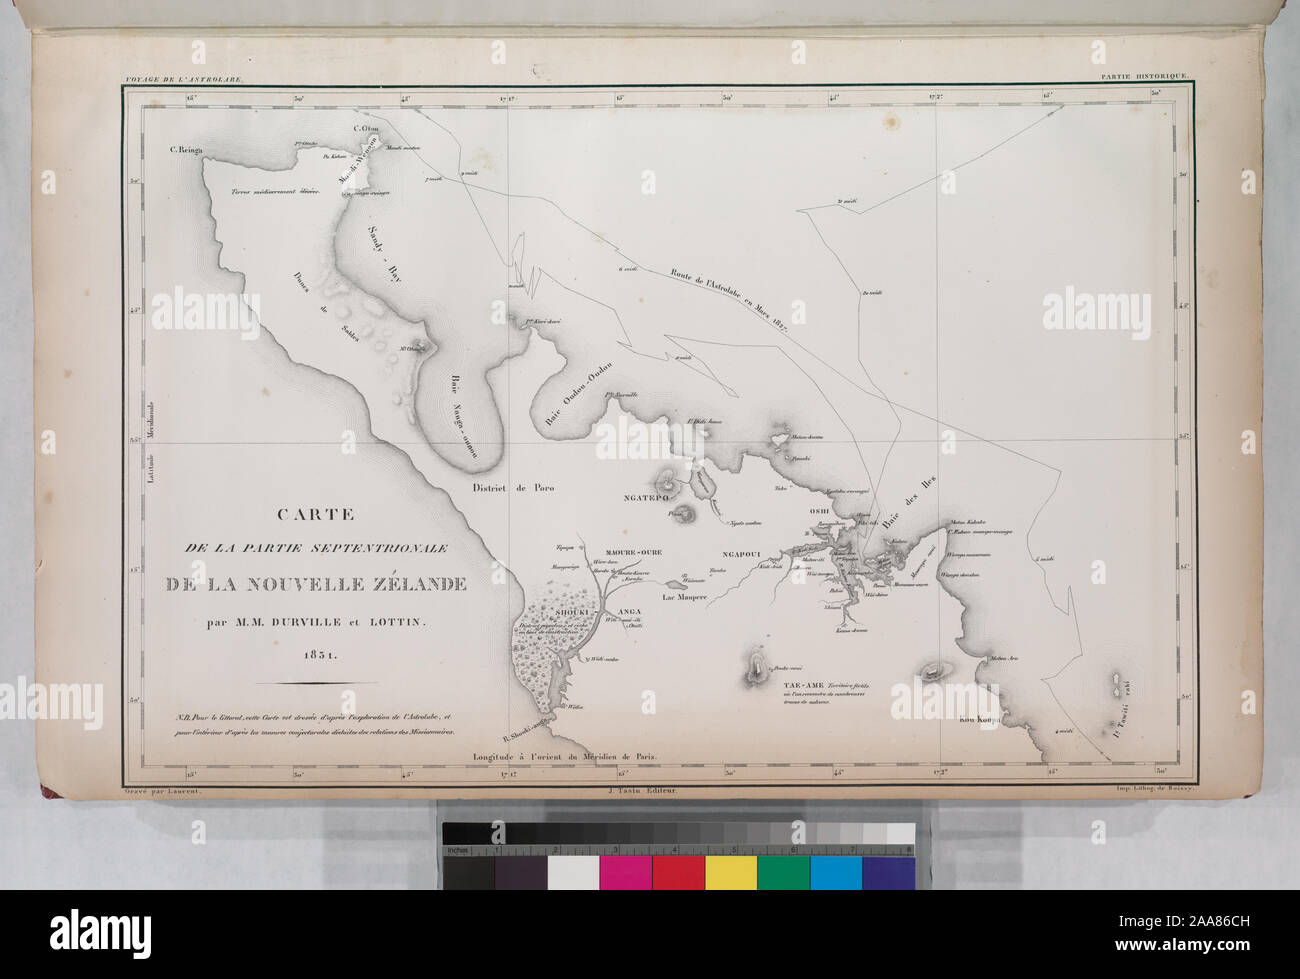 Carte de la partie septentrionale, de la Nouvelle Zélande par M.M. Durville et Lottin, 1831. ; Carte de la partie septentrionale, de la Nouvelle Zélande par M.M. Durville et Lottin, 1831. Banque D'Images